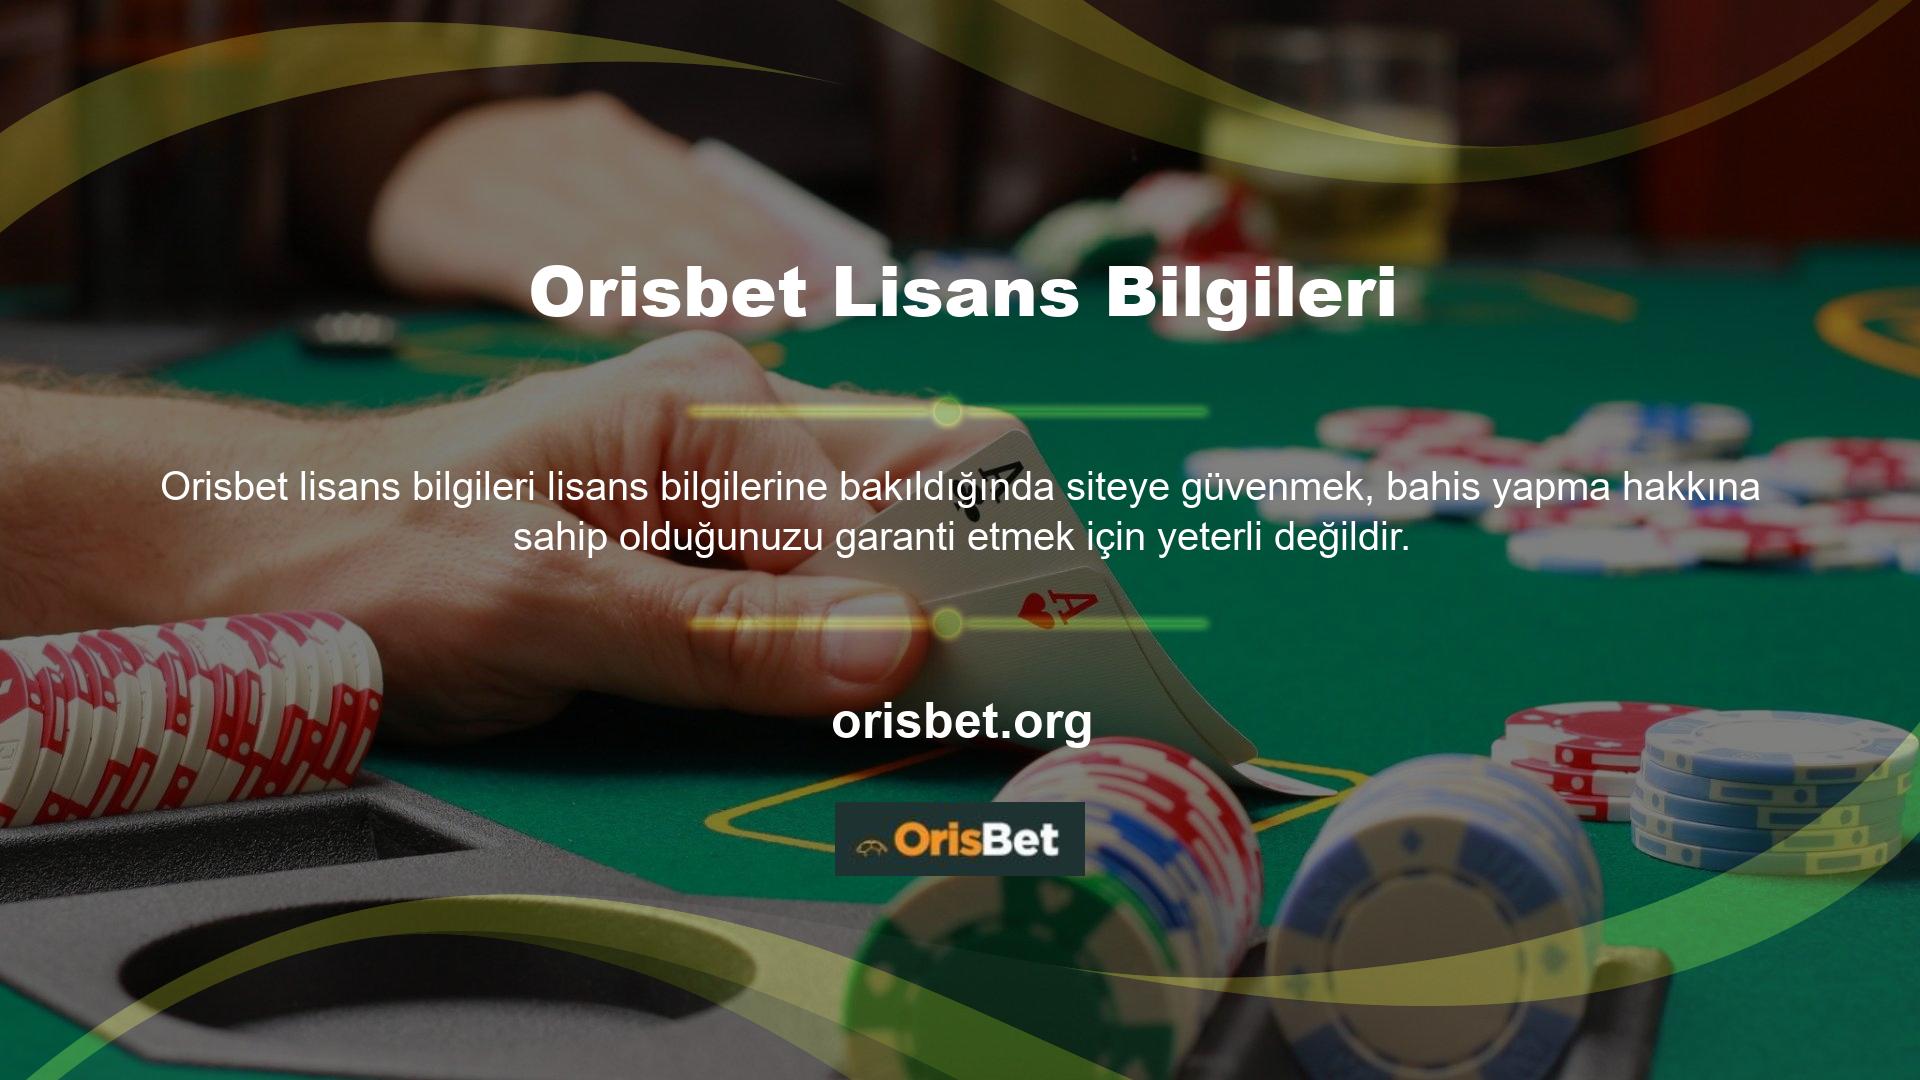 Bu nedenle Orisbet lisans bilgilerinin casino, spor ve casino slot oyunları için geçerli olması gerekmektedir